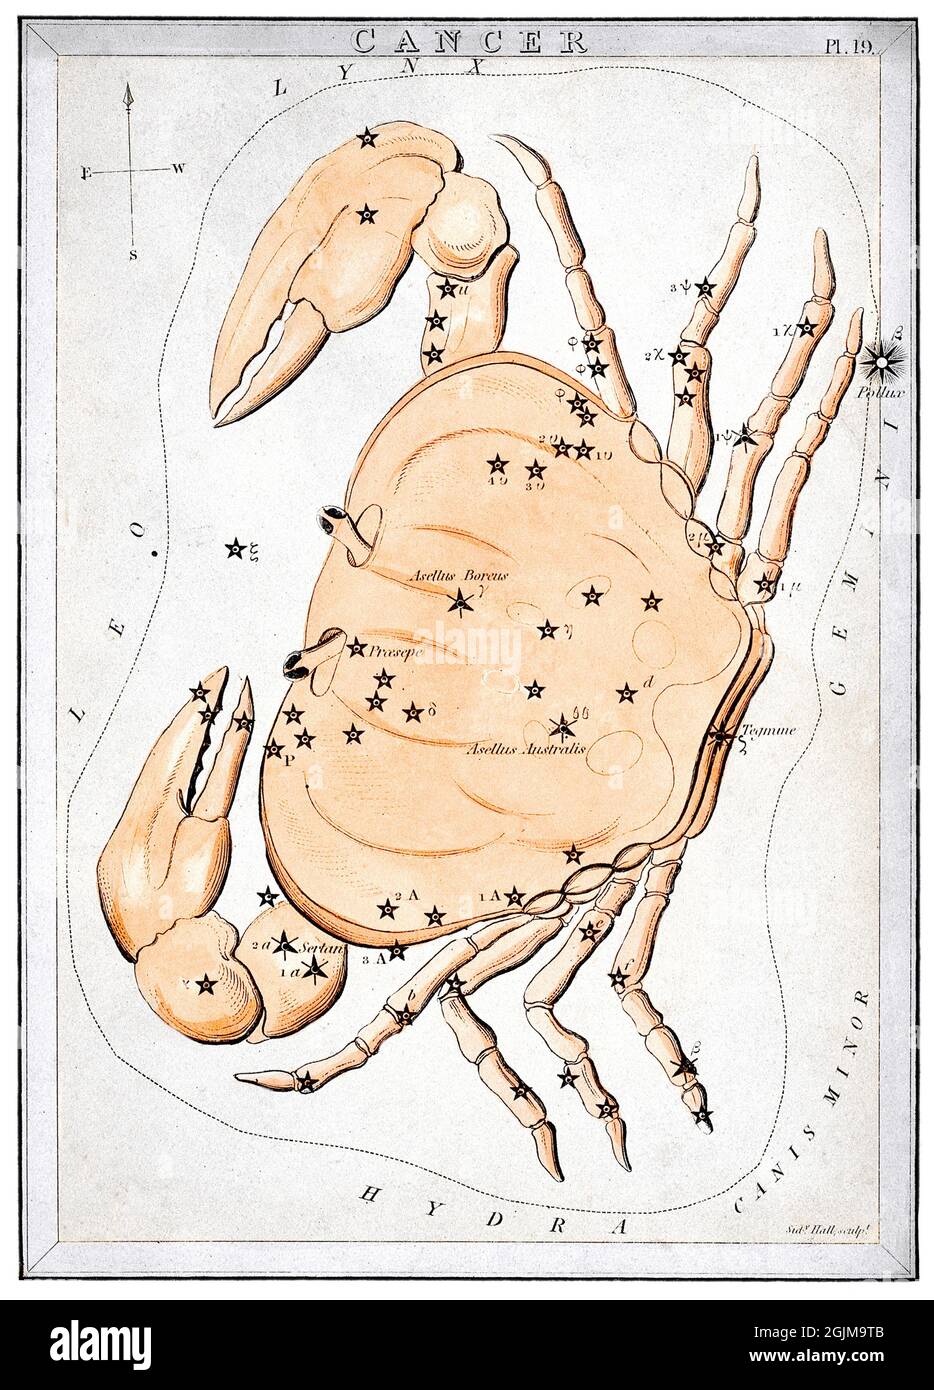 Cancer tel que décrit dans UraniaÕs Mirror, un ensemble de 32 cartes de constellation, publié pour la première fois par Samuel Leigh de The Strand, Londres, en novembre 1824. Carte 19, cancer. Une version optimisée et améliorée unique d'une illustration historique. Banque D'Images